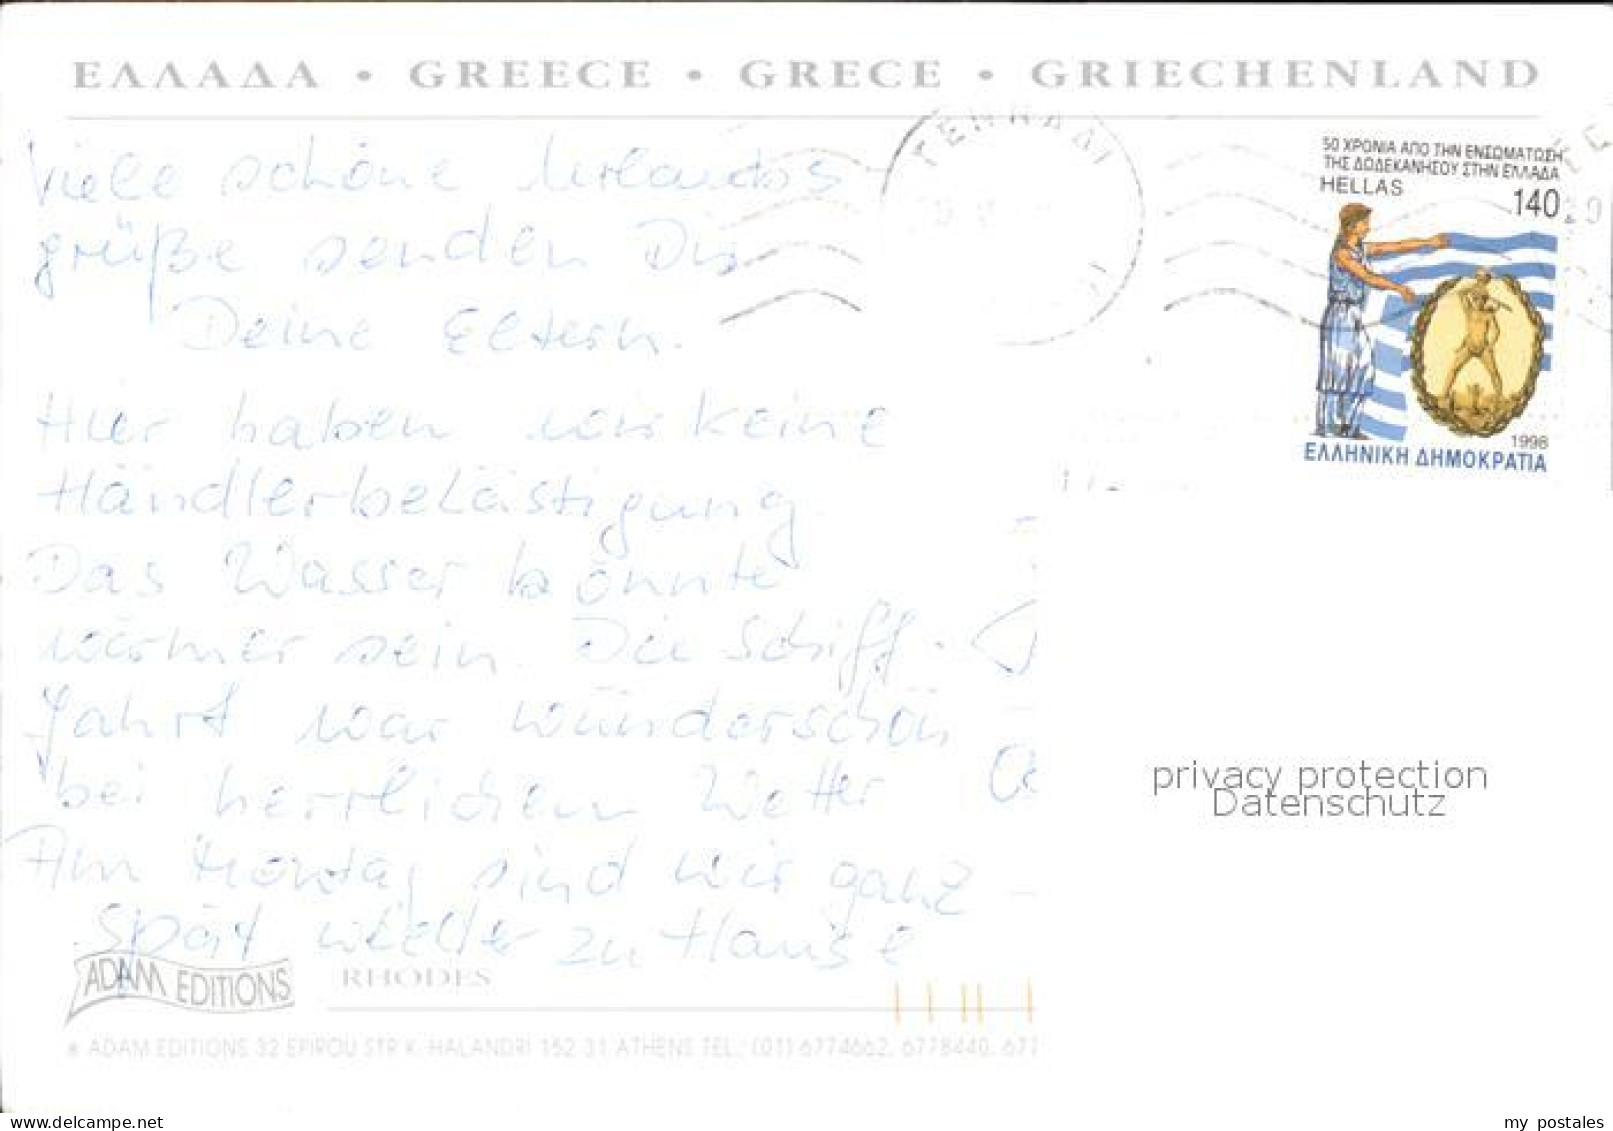 72496501 Rhodes Rhodos Greece Fliegeraufnahmen  - Grèce